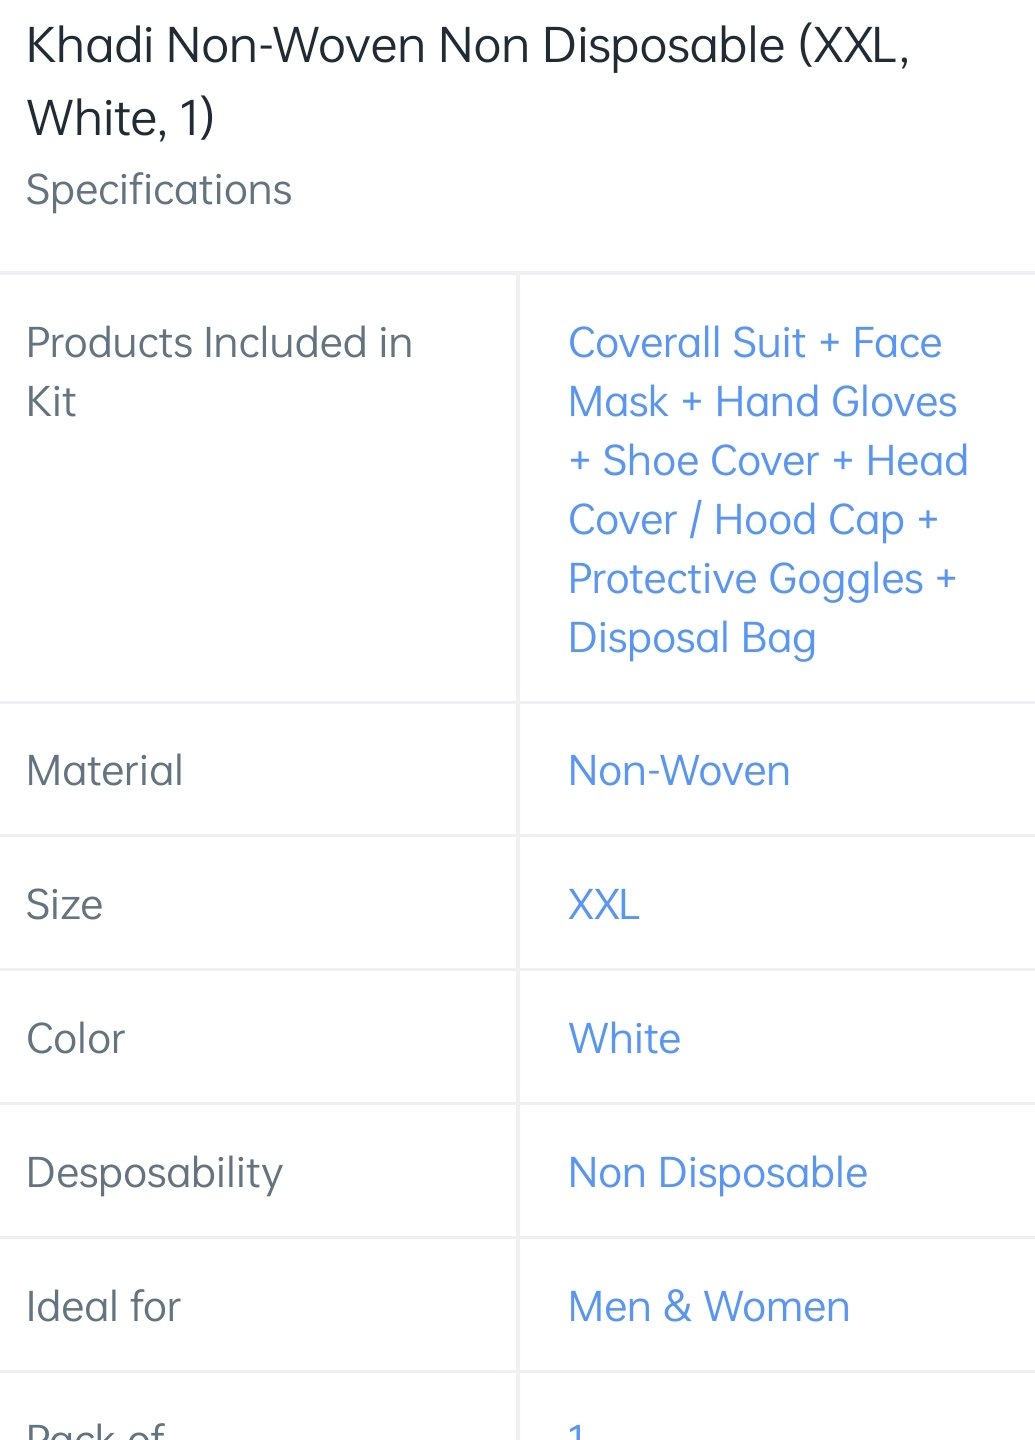 PPE KIT KHADI Non Woven Disposable (XXL) - White, Free size